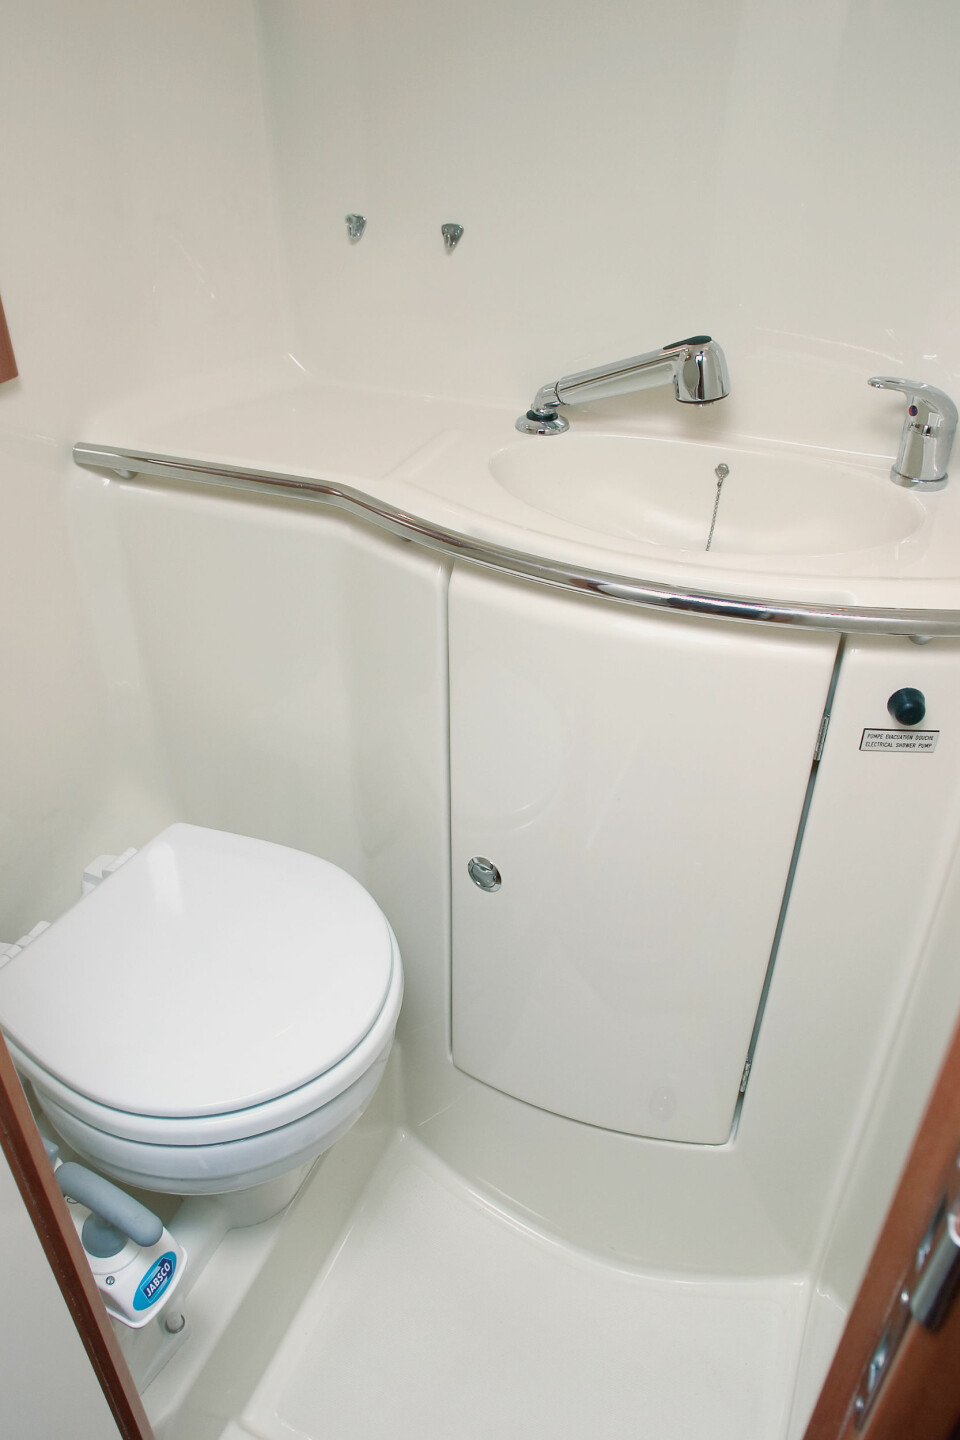 TOALETTET: Størrelsen på toalettet avhenger av hvilken innredningsløsning som velges. Dette er toalett til en båt med to akterlugarer og er med andre ord den minste varianten.